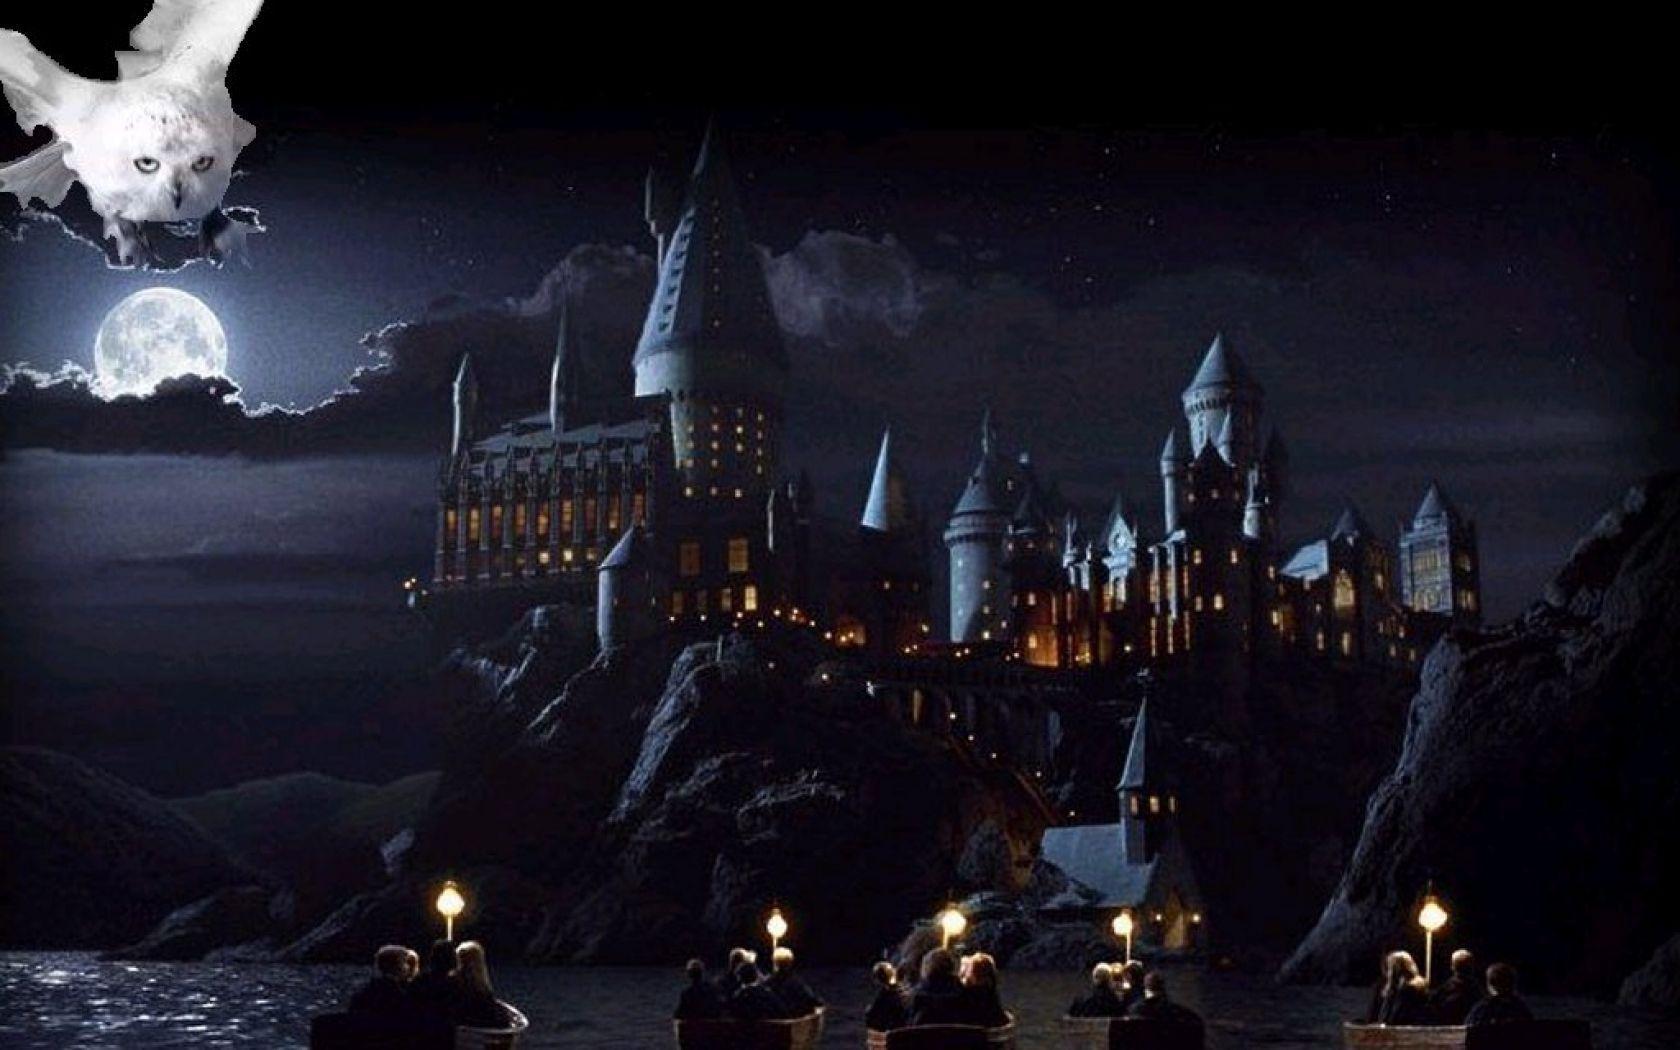 Thiết kế lâu đài Hogwarts chắc chắn là một trong những điều tuyệt vời nhất trong loạt phim Harry Potter. Bạn muốn có một màn hình máy tính độc đáo với hình ảnh lâu đài Hogwarts đẹp mắt? Đến với bộ sưu tập của chúng tôi để tìm kiếm những hình nền đẹp nhất.